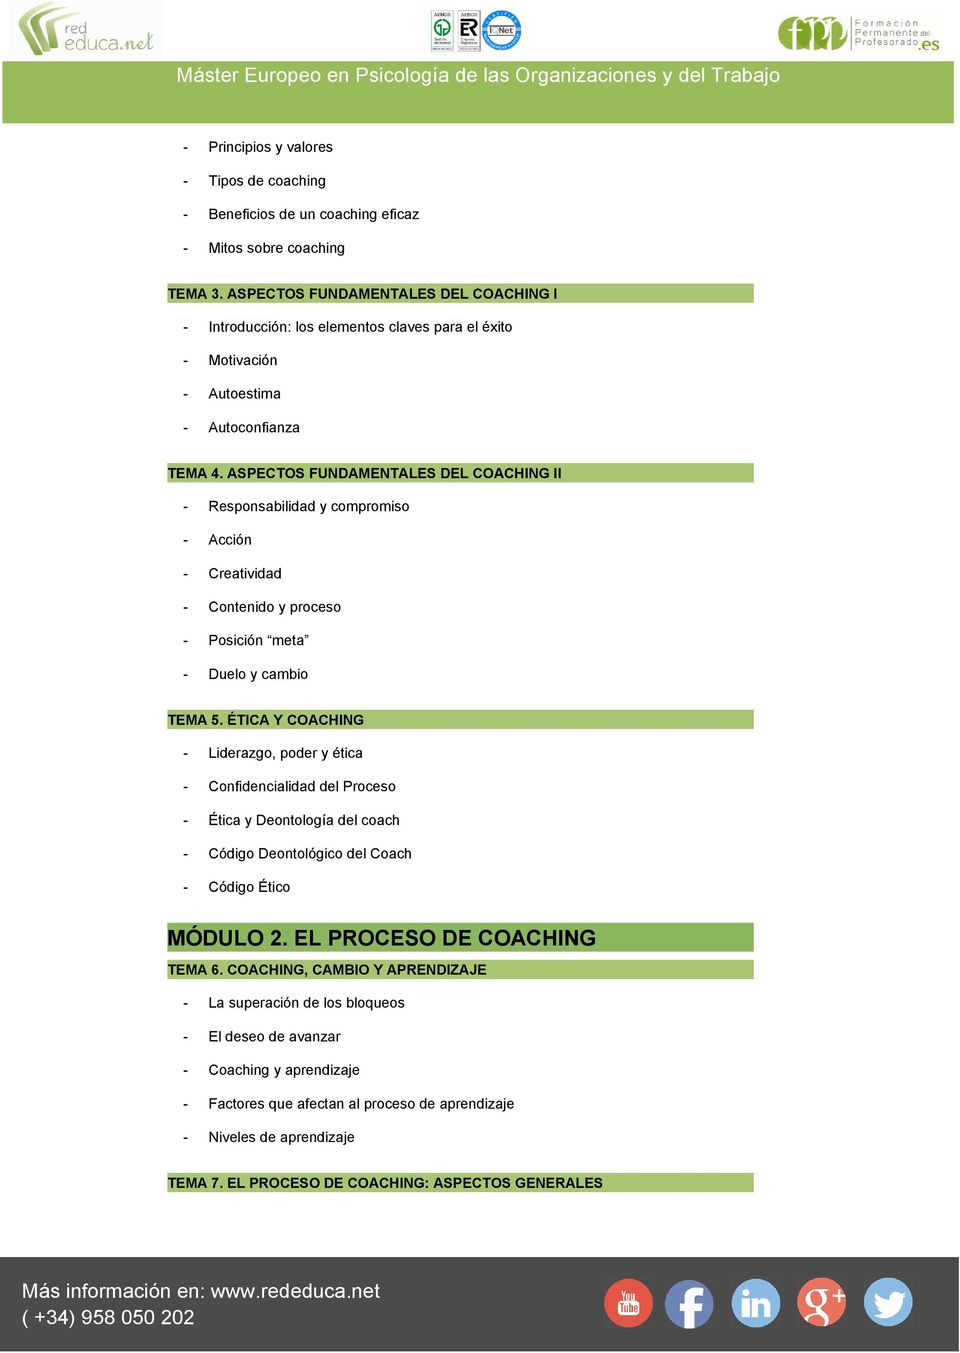 ASPECTOS FUNDAMENTALES DEL COACHING II - Responsabilidad y compromiso - Acción - Creatividad - Contenido y proceso - Posición meta - Duelo y cambio TEMA 5.